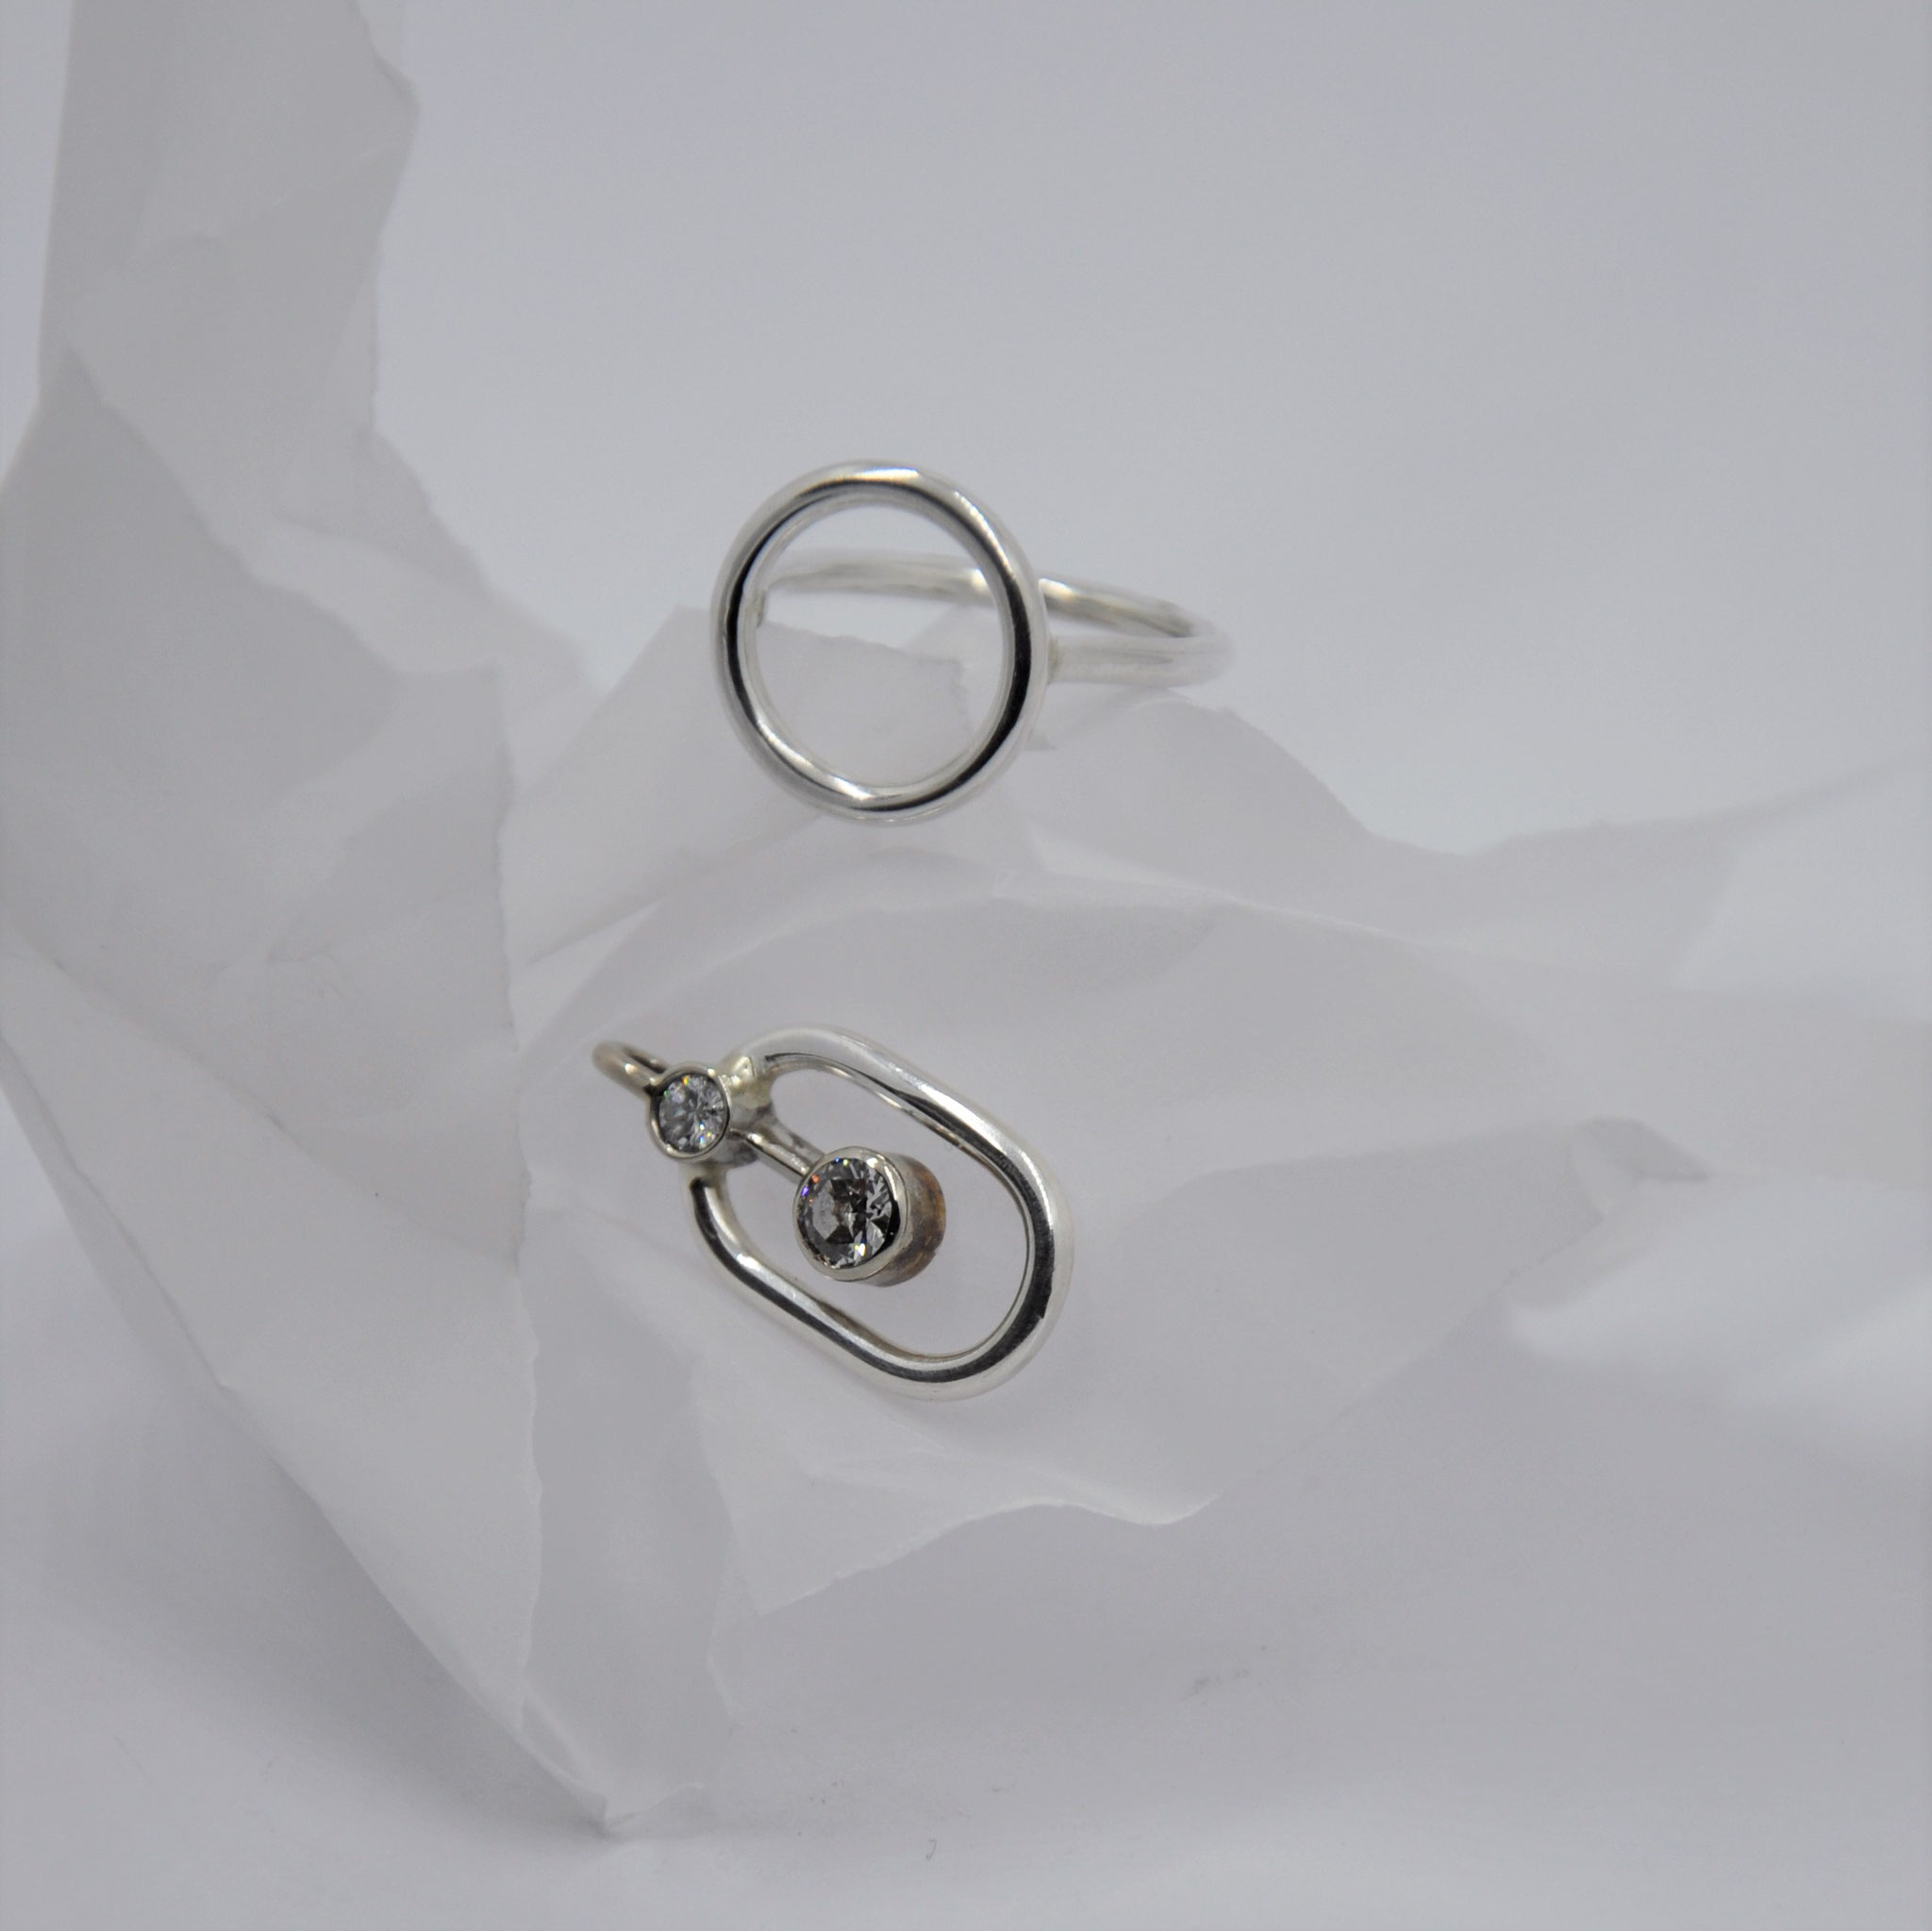 NACHHER: Circle-Ring und Anhänger mit Mittelteil aus Weißgold und Diamanten